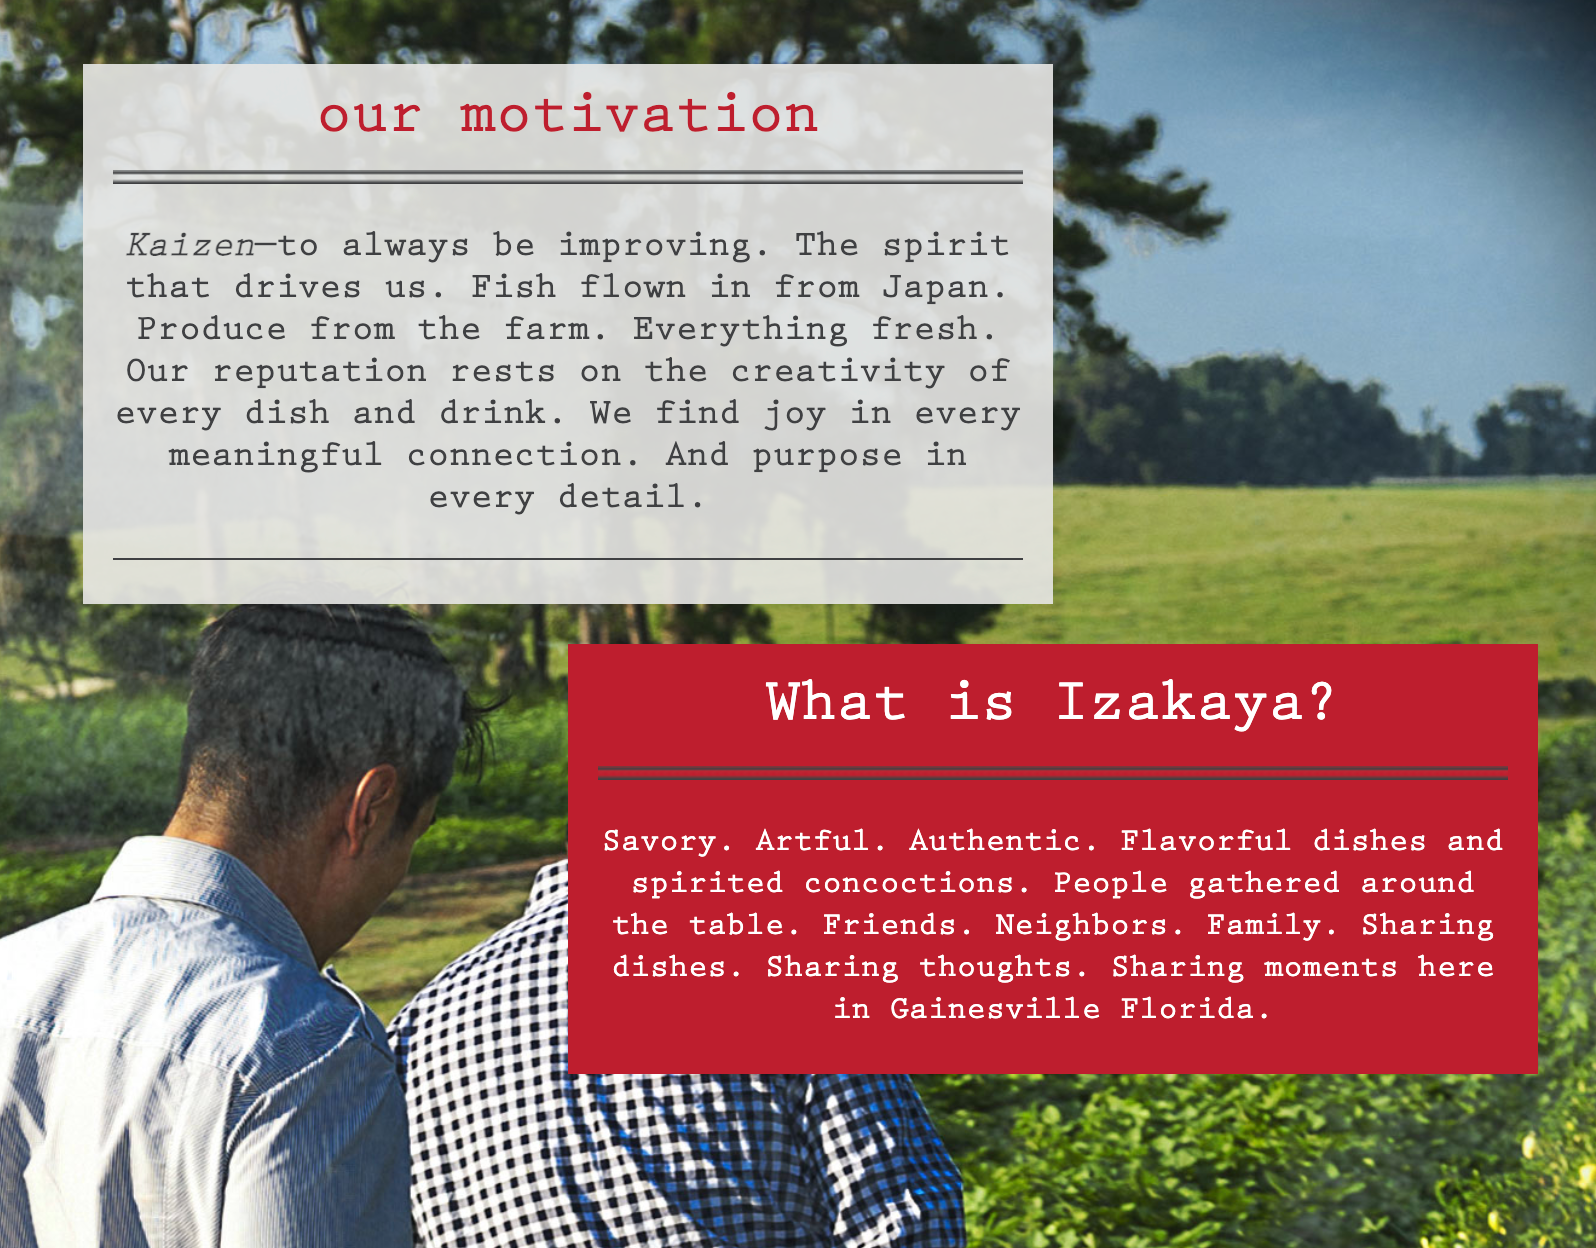 A web page about Izakaya and 